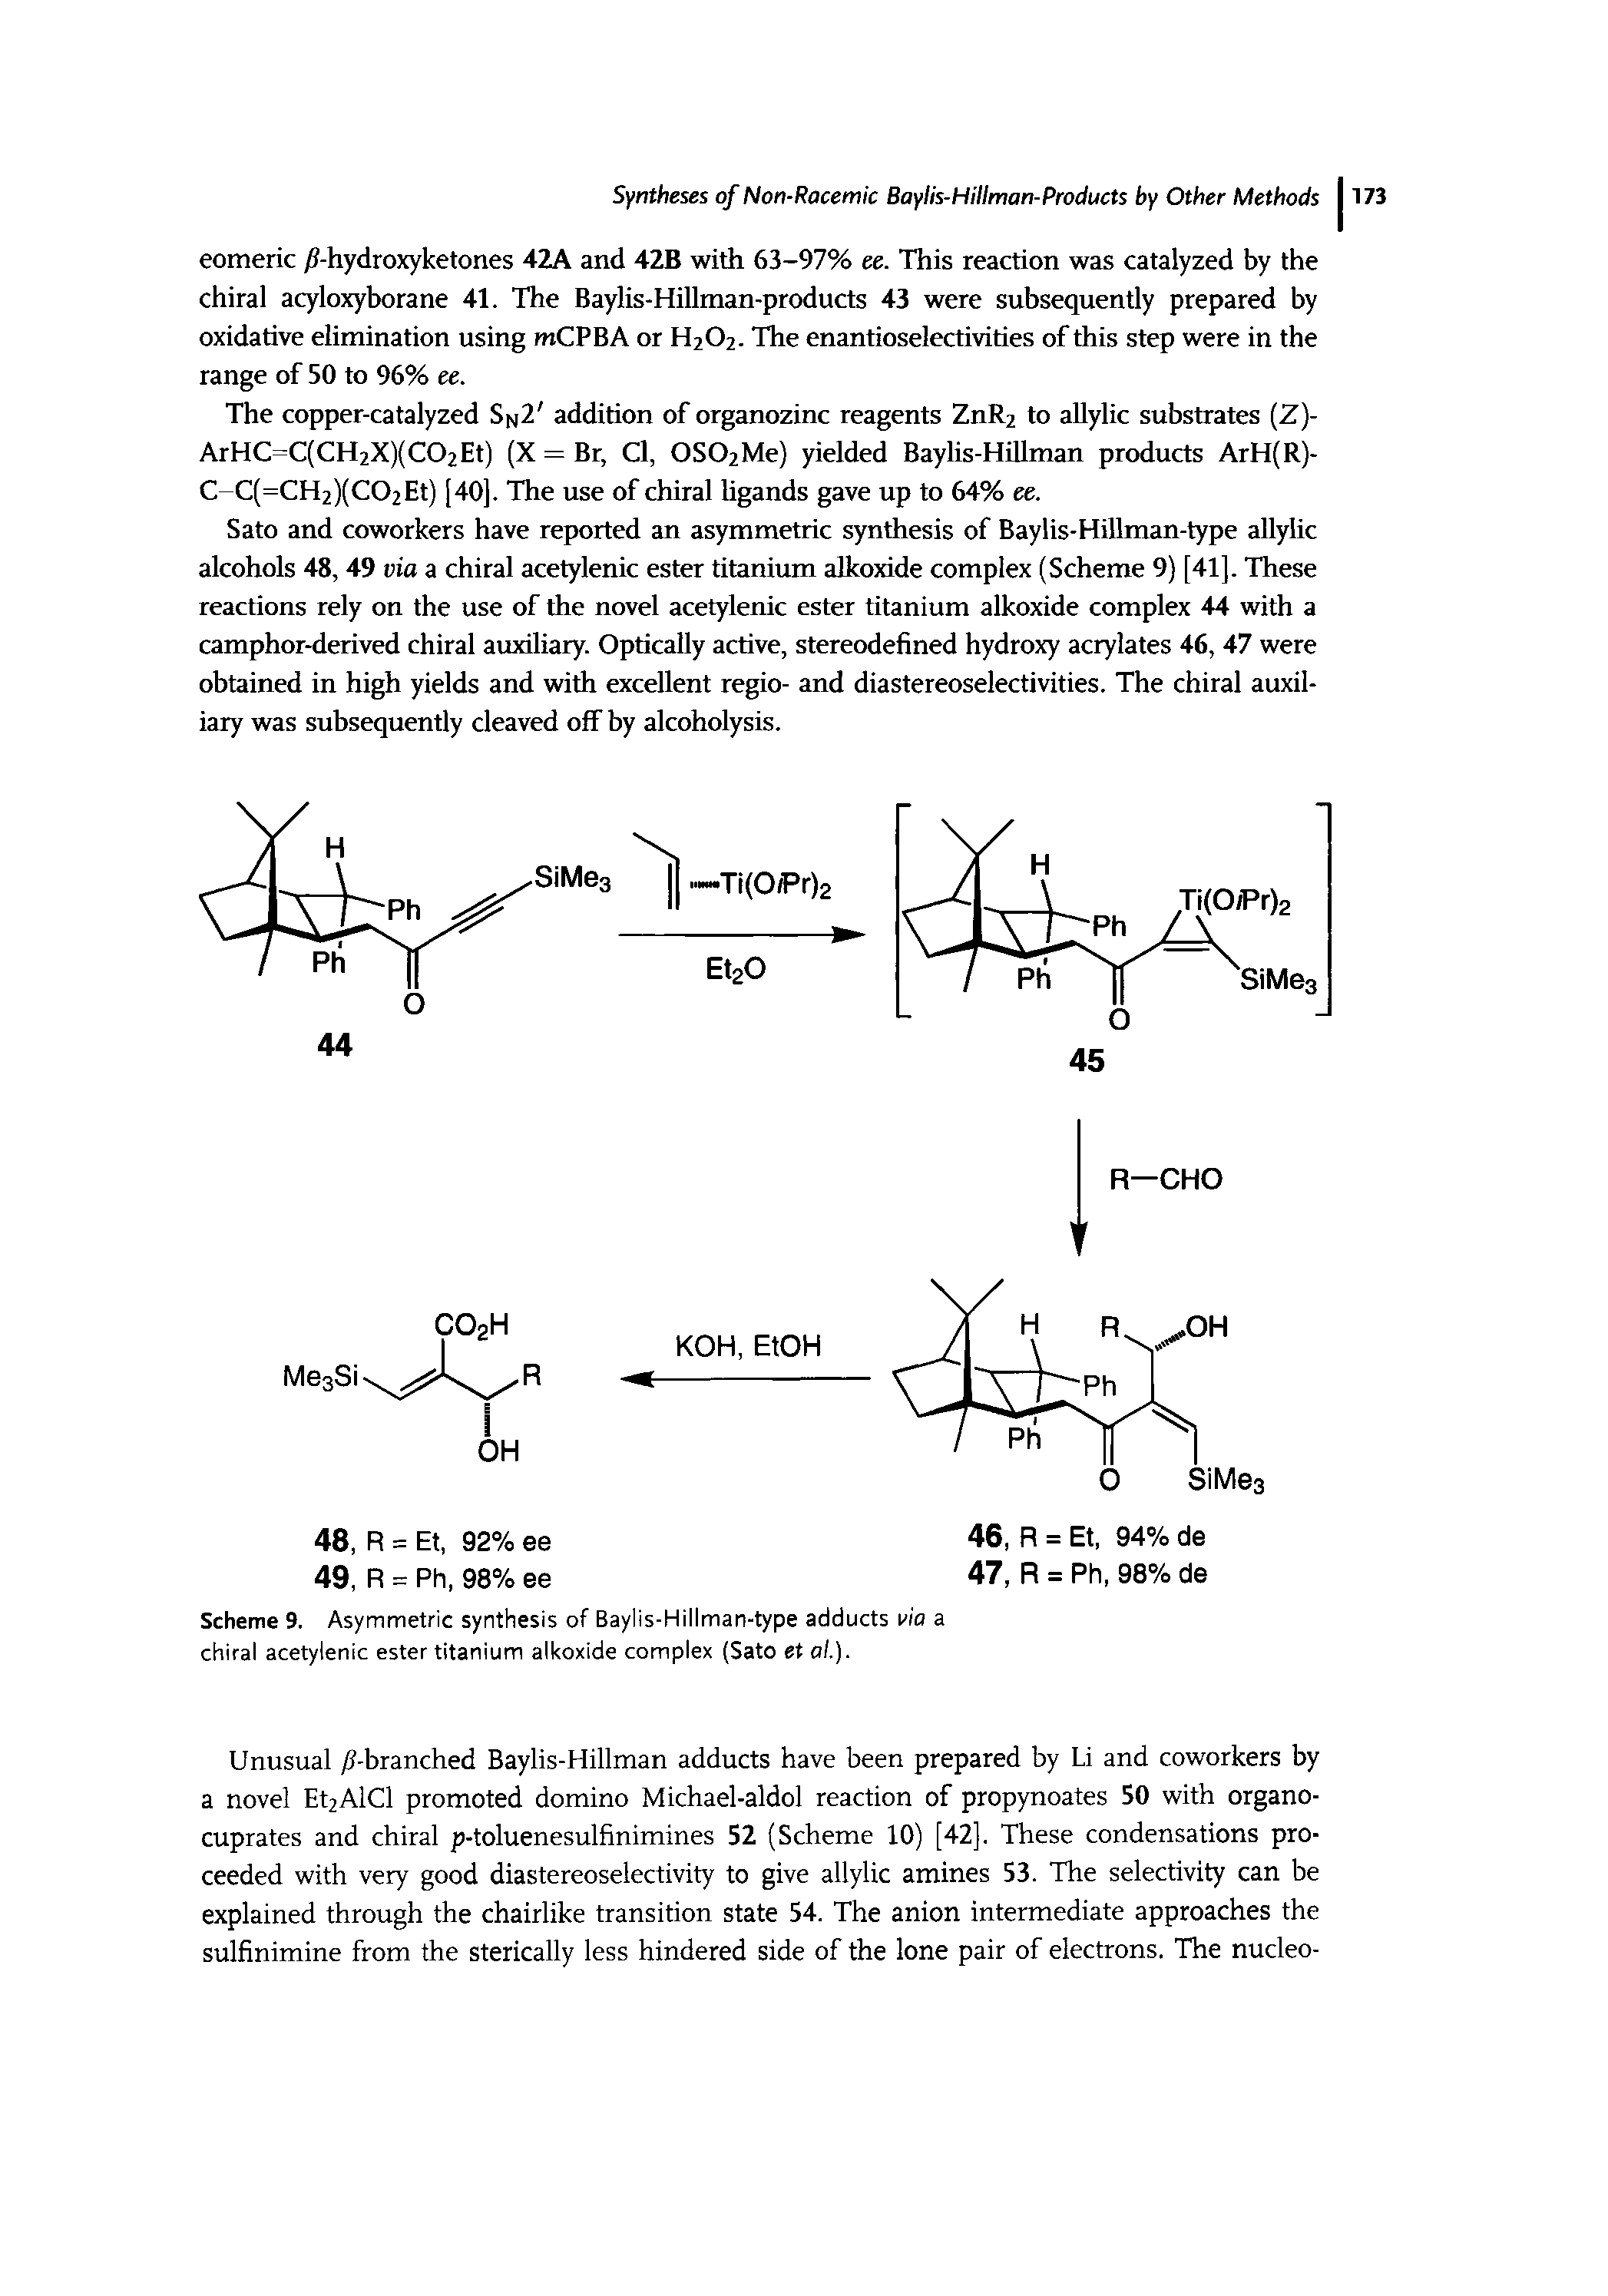 Scheme 9. Asymmetric synthesis of Baylis-Hillman-type adducts via a chiral acetylenic ester titanium alkoxide complex (Sato et al.).